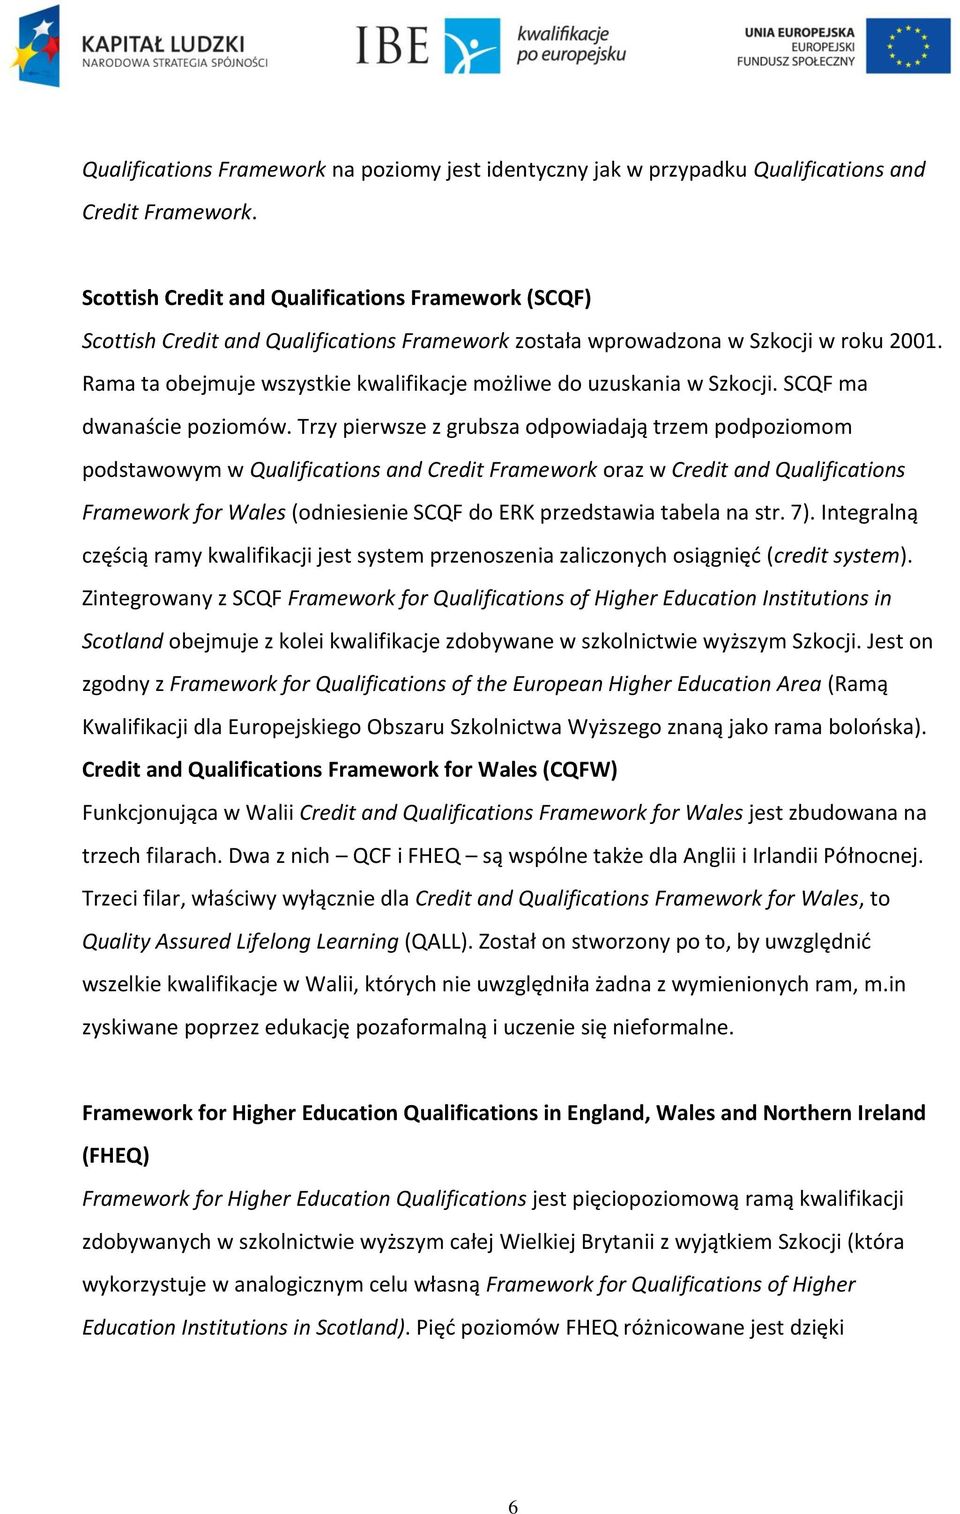 Rama ta obejmuje wszystkie kwalifikacje możliwe do uzuskania w Szkocji. SCQF ma dwanaście poziomów.